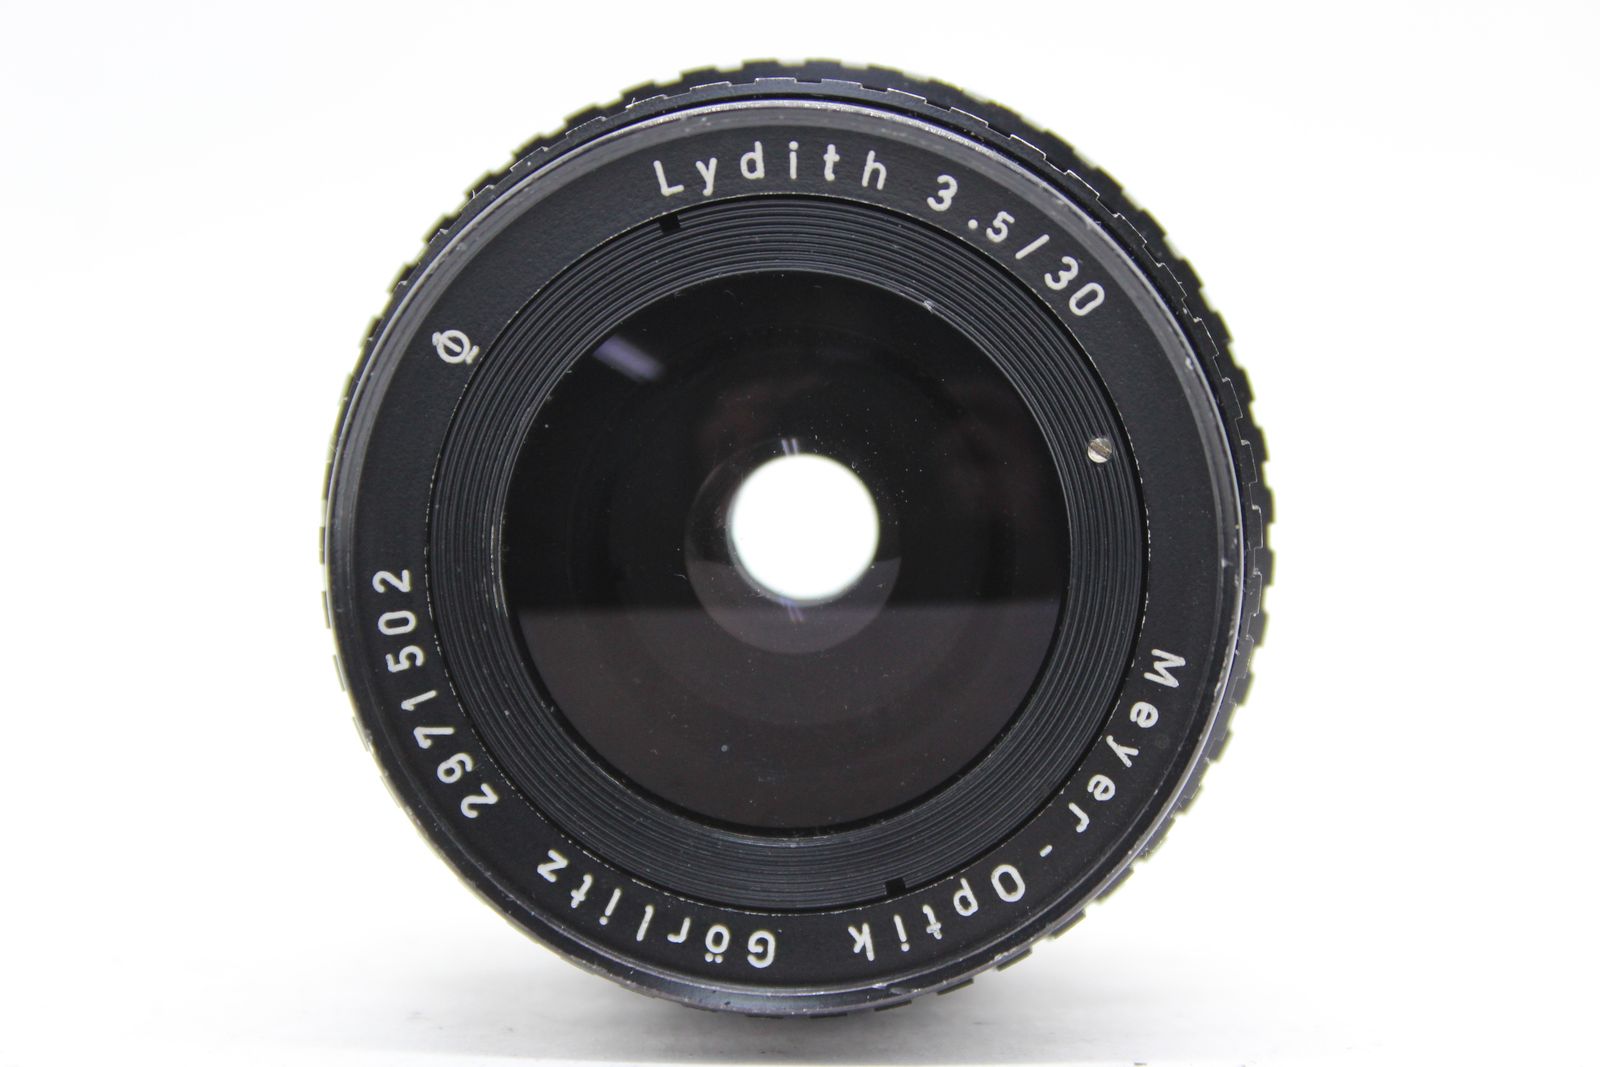 【返品保証】 Meyer-Optik Gorlitz Lydith 30mm F3.5 ゼブラ柄 レンズ s6303